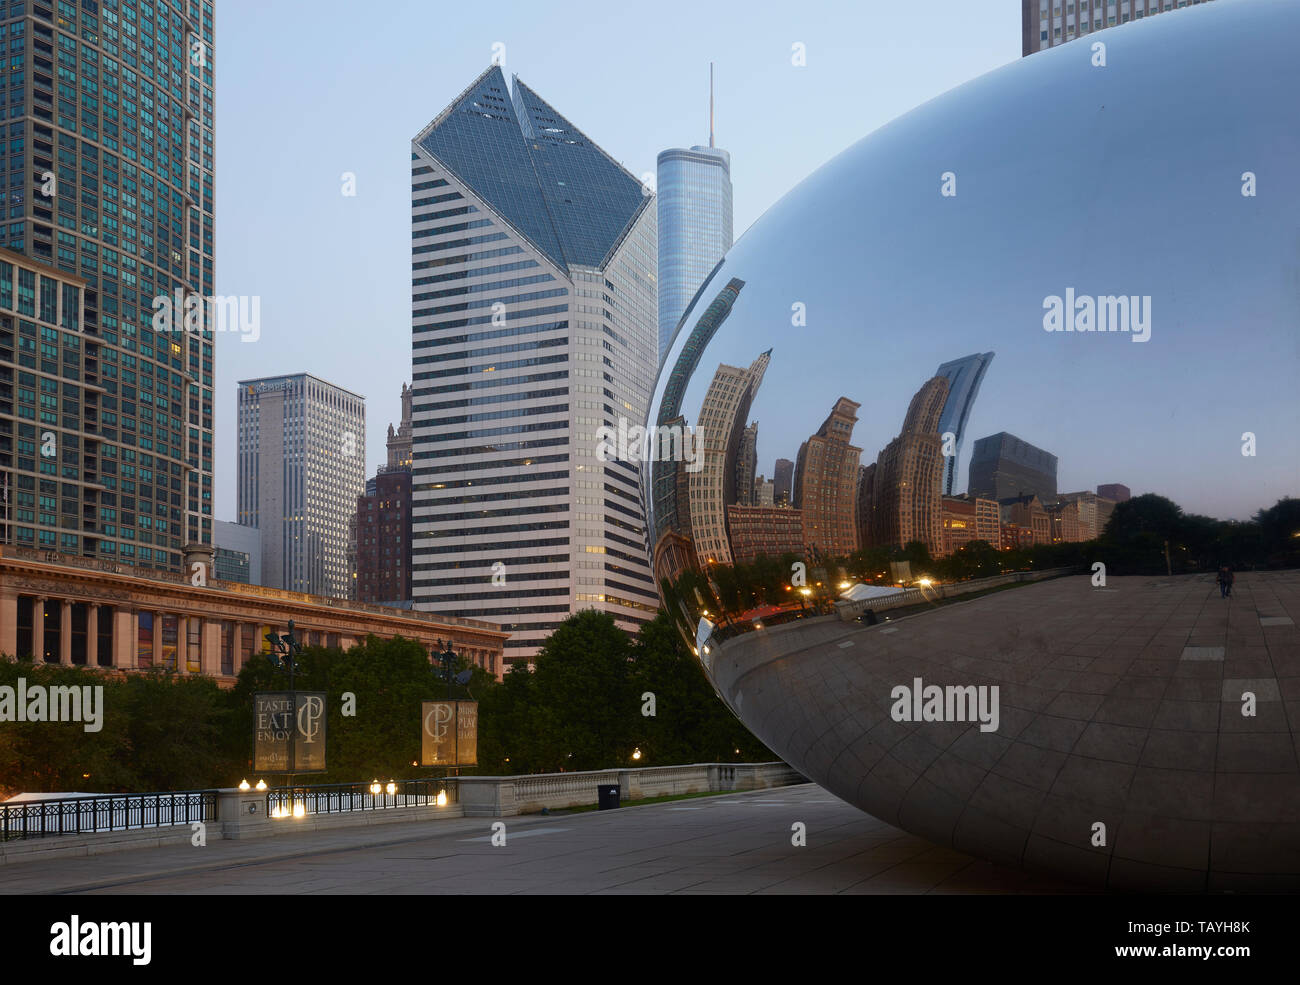 La sculpture Cloud Gate, également connu sous le nom de Bean, au Millenium Park, Chicago, Illinois, United States Banque D'Images